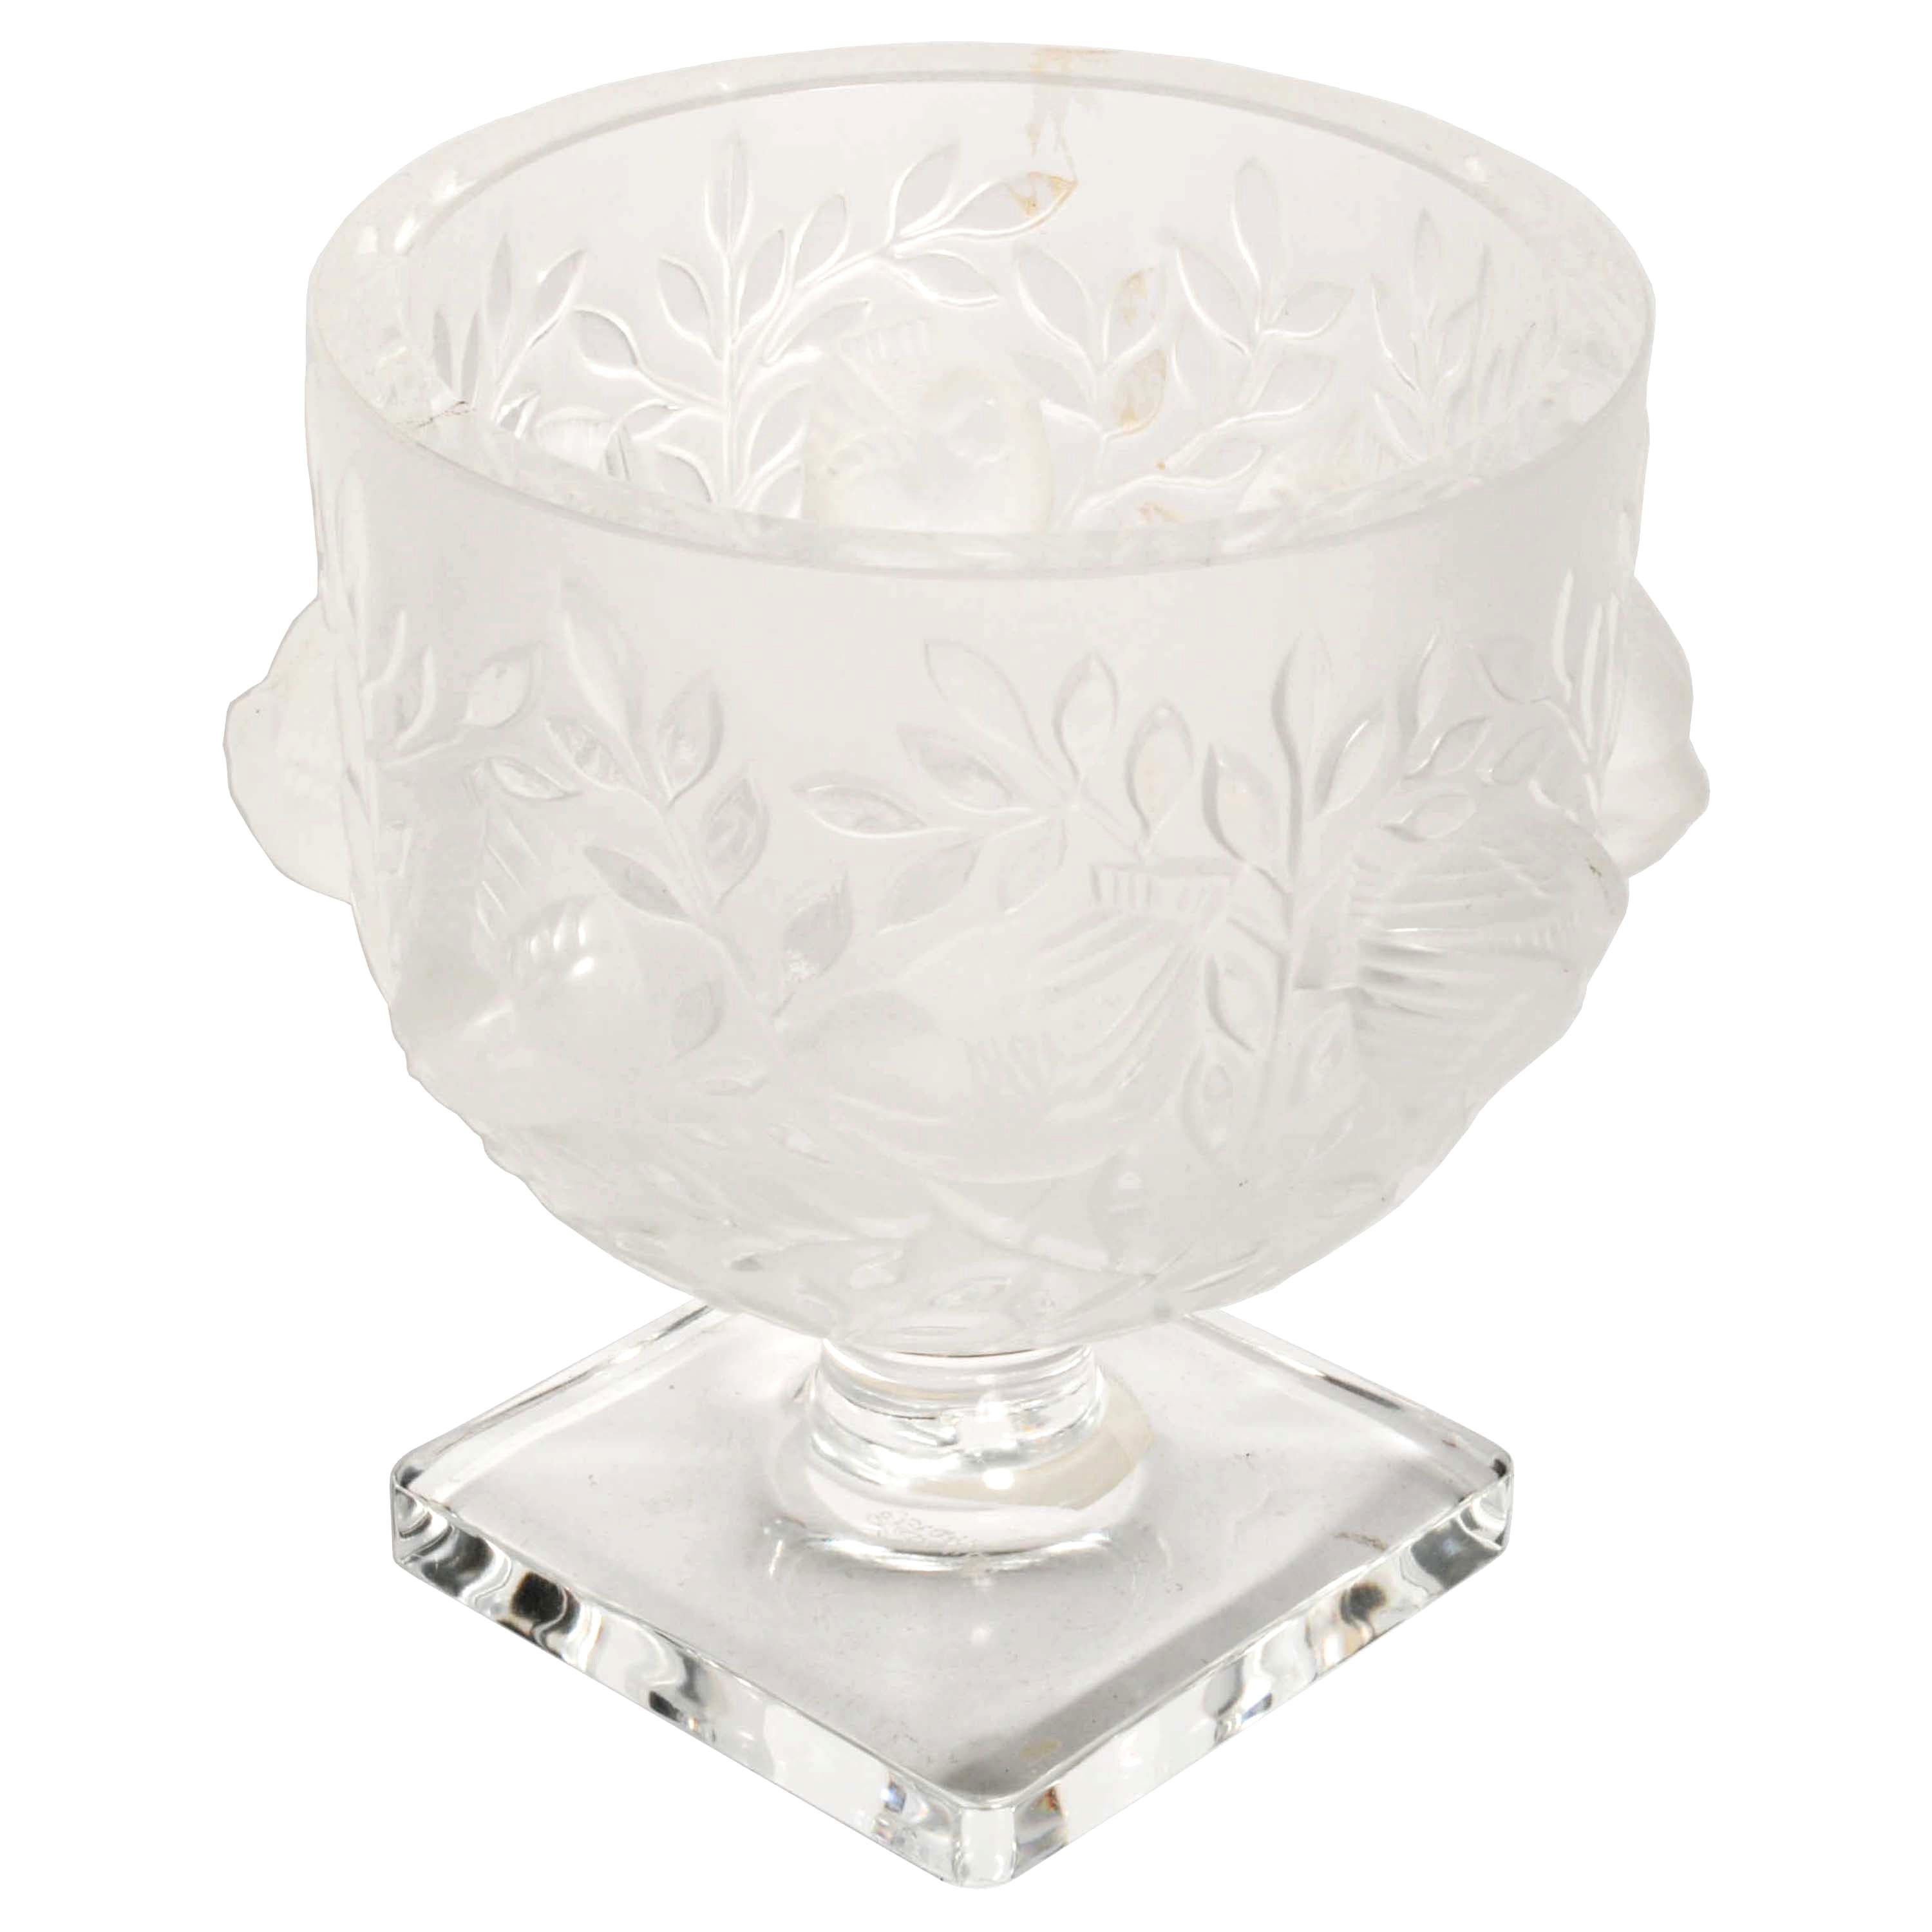 Vase vintage en cristal Lalique « Elizabeth », signé.
Ce magnifique vase en forme de coupe a été conçu par Marc Lalique en 1961 et il s'agit de l'une des premières reproductions de cette date. Le vase en verre satiné est soufflé en moule avec des